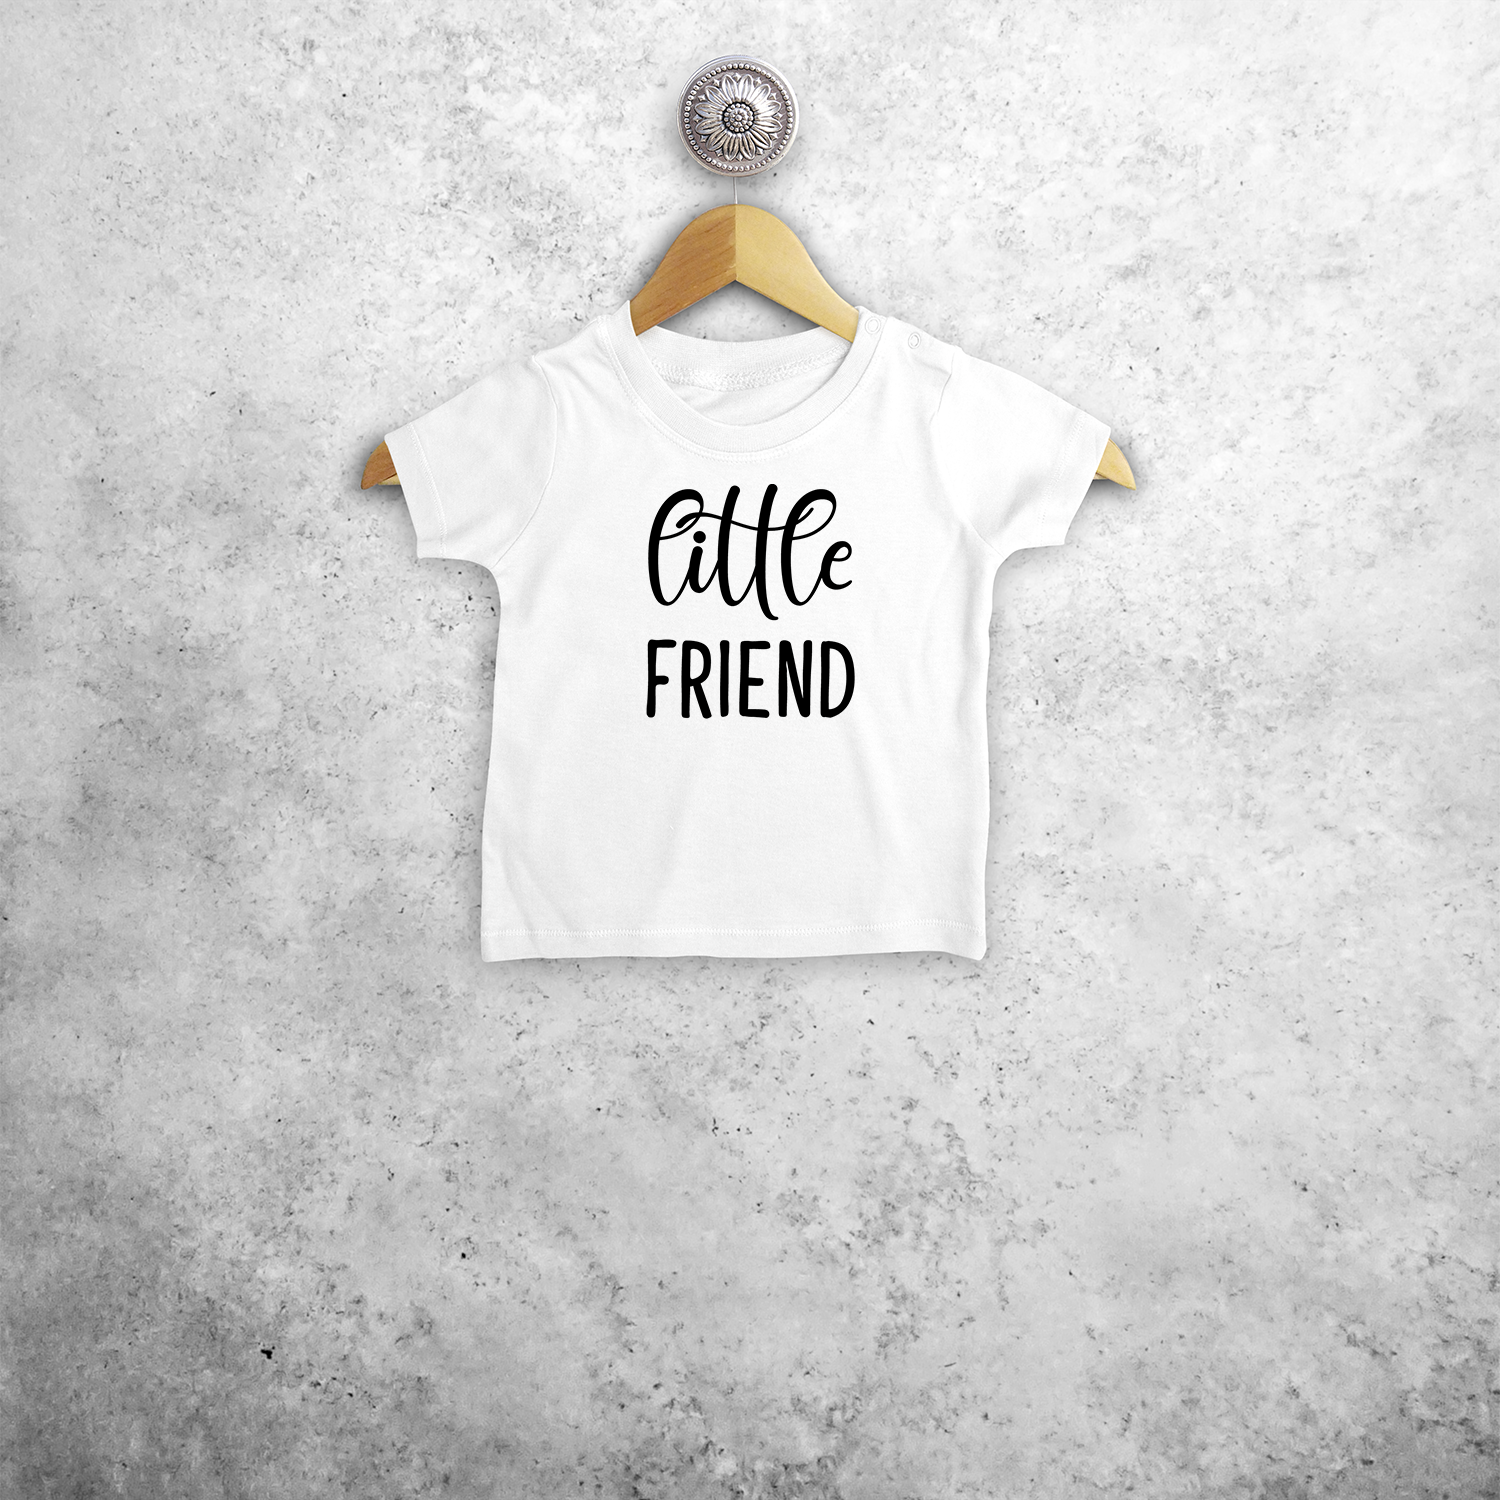 'Little friend' baby shortsleeve shirt